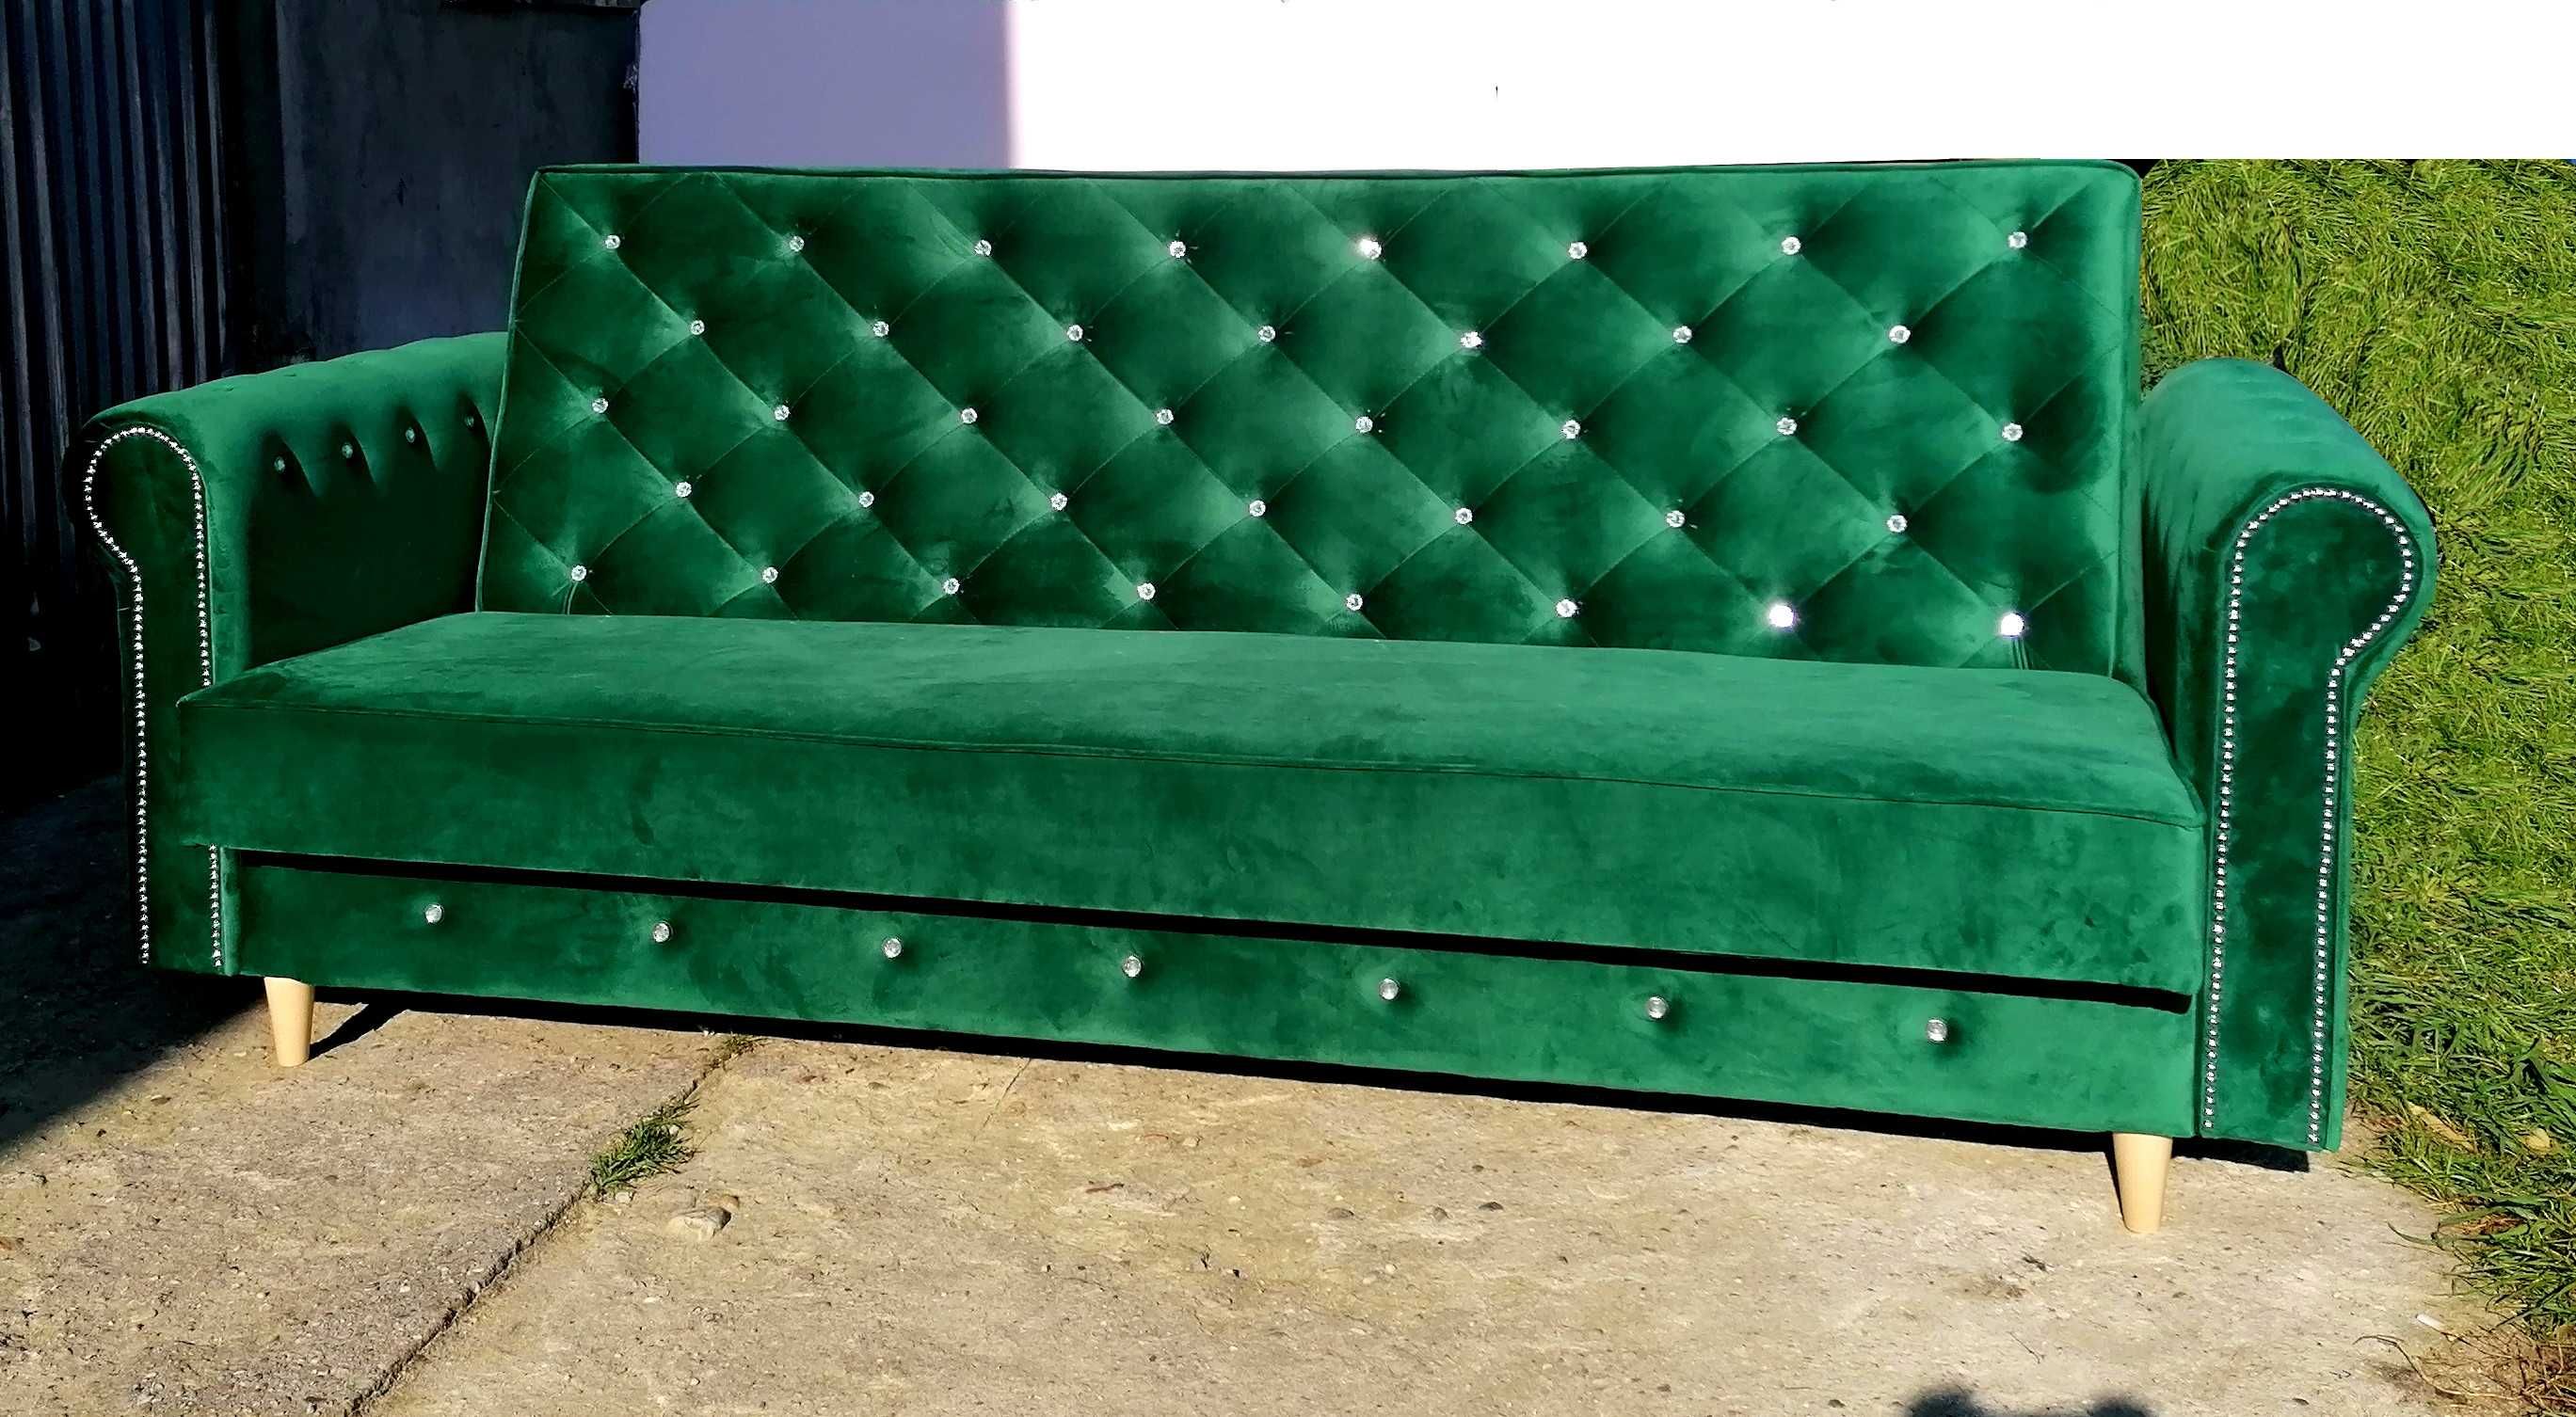 RATY komplet zestaw Glamour Chesterfield kanapa sofa rozkładana uszak